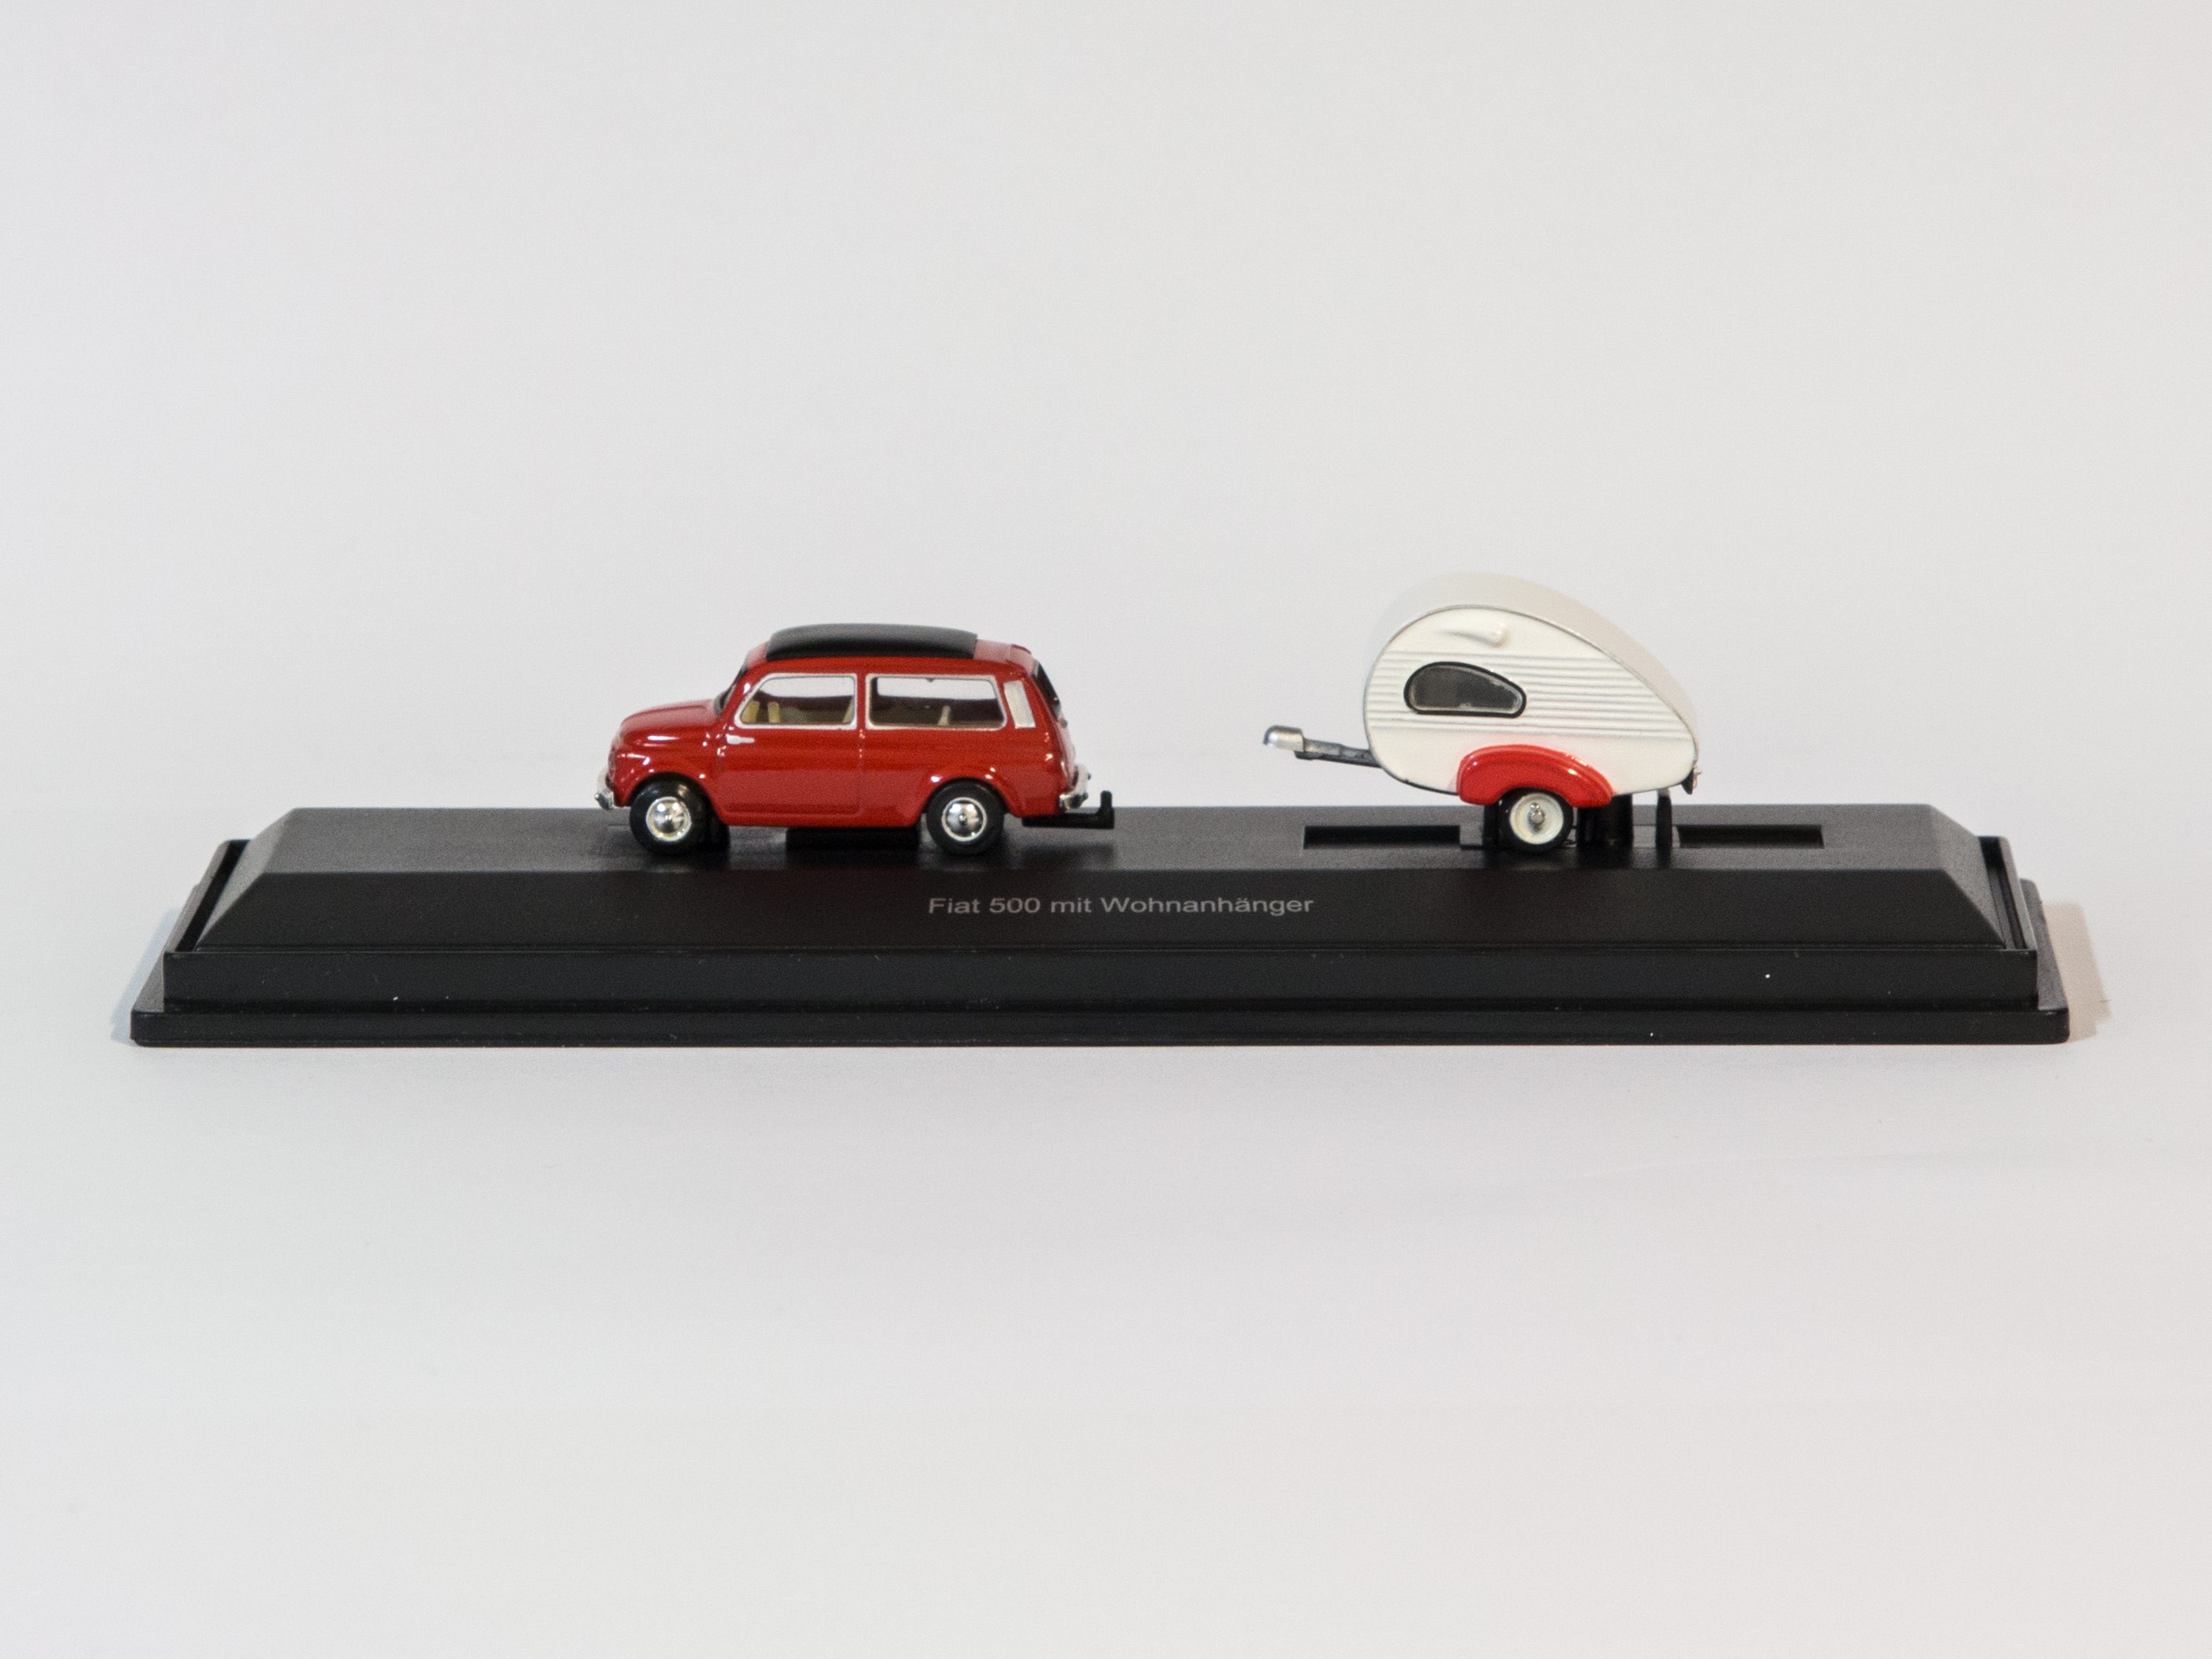 Schuco Fiat 500 Mit Wohnanhanger Miniatur Wunderland Shop